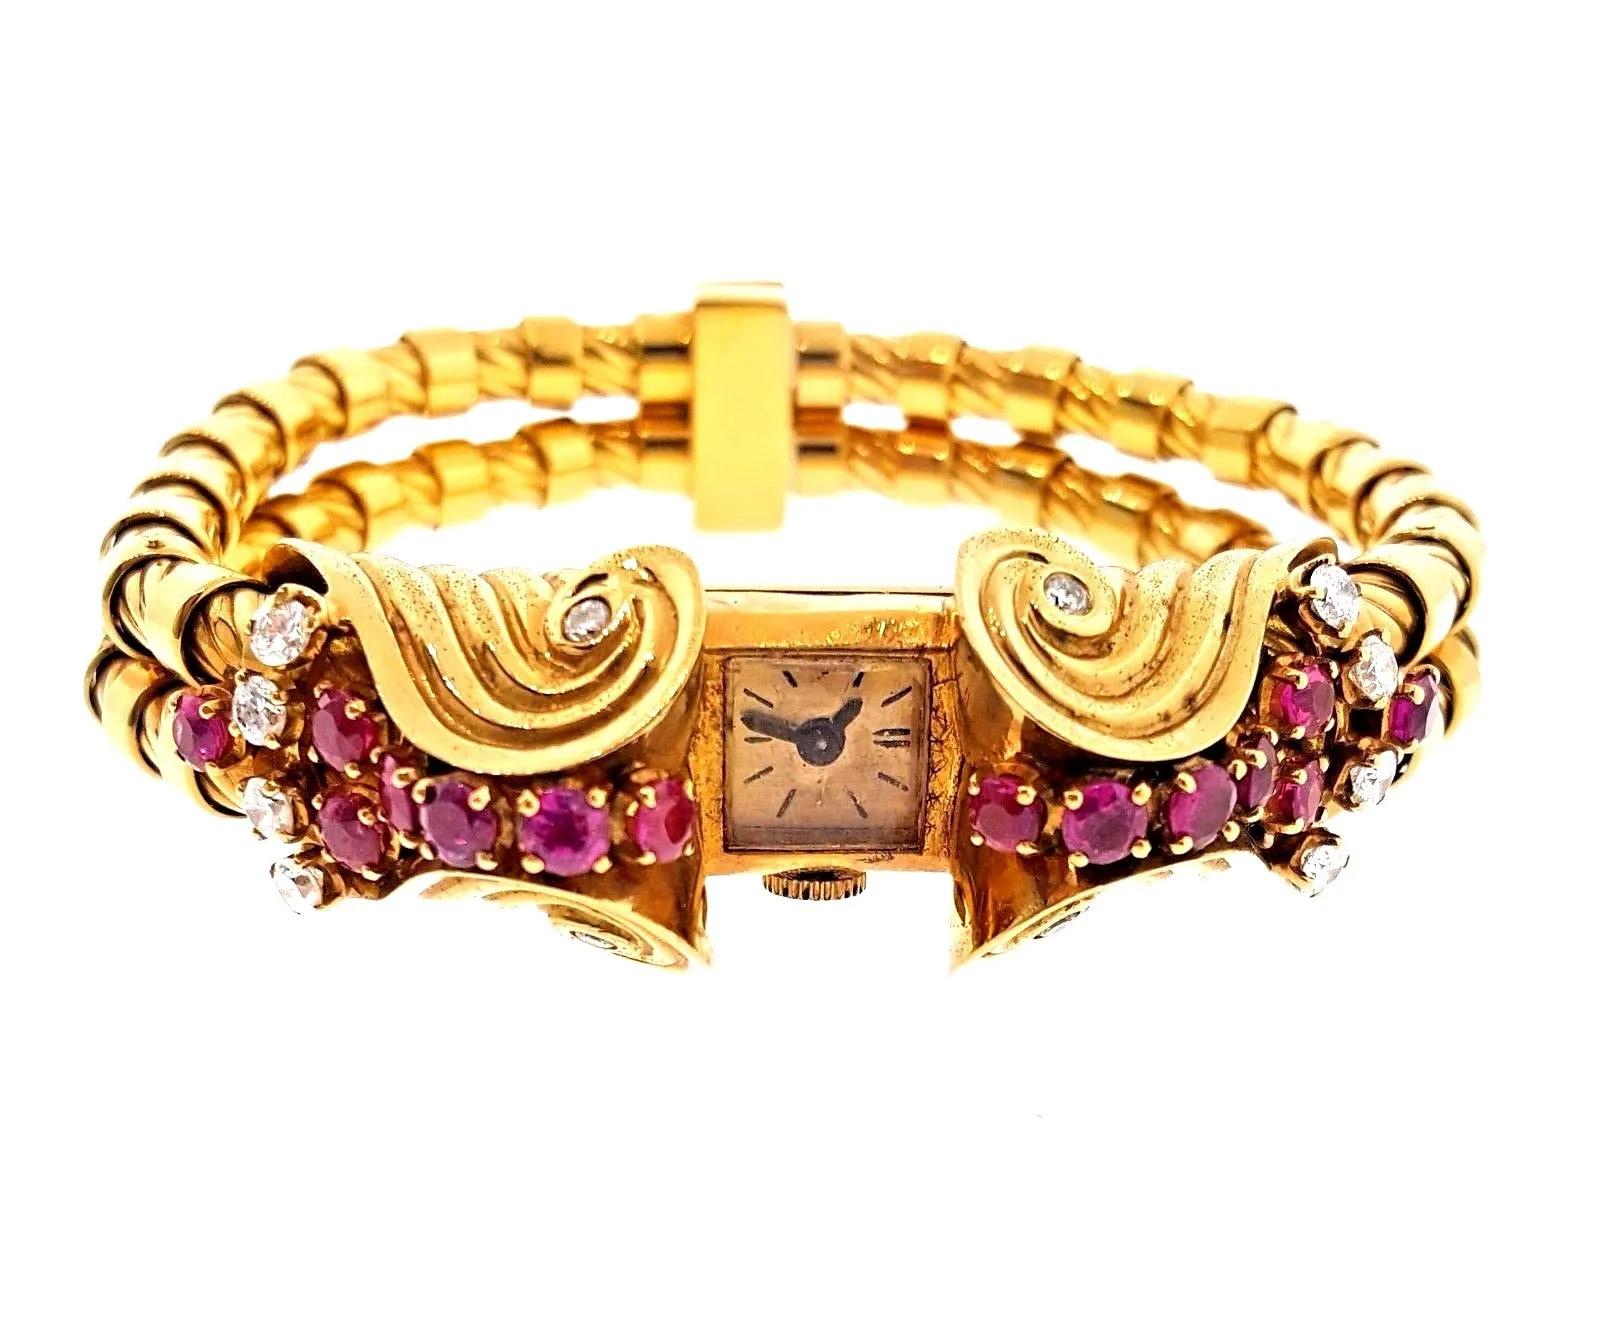 Vintage French Retro Rubin und Diamant Armbanduhr in 18K Rose Gold

Französische Retro-Armbanduhr aus 18 Karat Roségold. Das Gehäuse der Uhr schmücken 14 rote Rubine und 12 Diamanten mit einem Gewicht von etwa 3,00 Karat. Das rechteckige Gehäuse hat